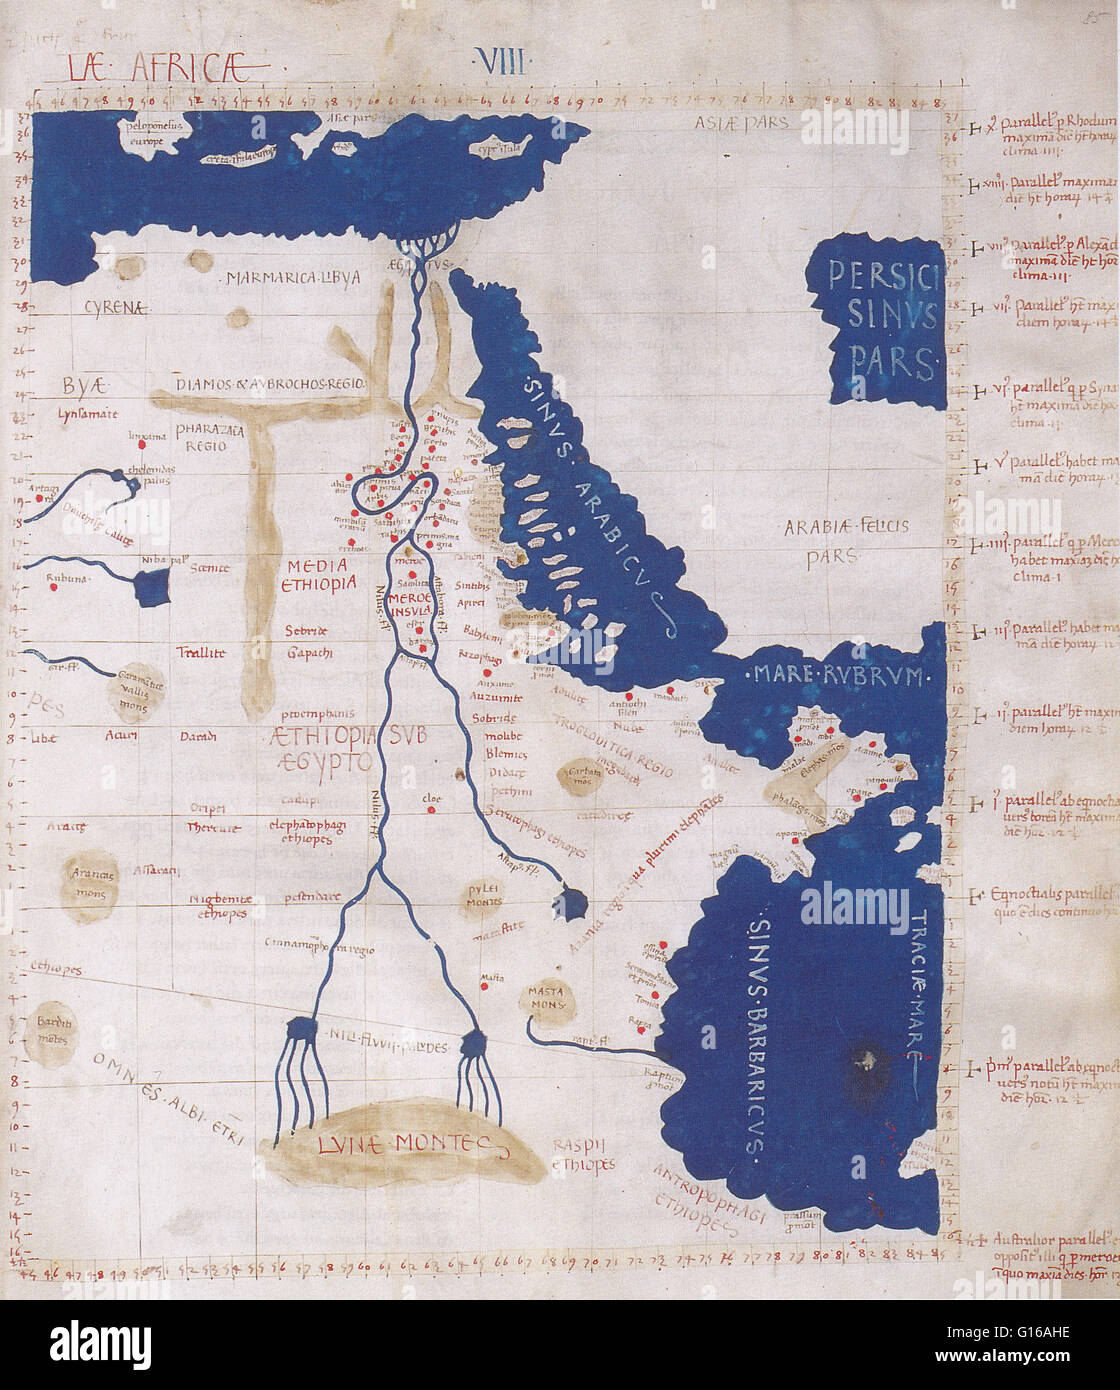 Ptolemäischen Karte des Nils stützte sich auf die Beschreibung im ptolemäischen Buch Geographia, 150 n. Chr. enthalten. Obwohl echte Karten nie gefunden wurden, enthält der Geographia Tausende von Referenzen zu den verschiedenen Teilen der alten Welt, mit Koordinie Stockfoto